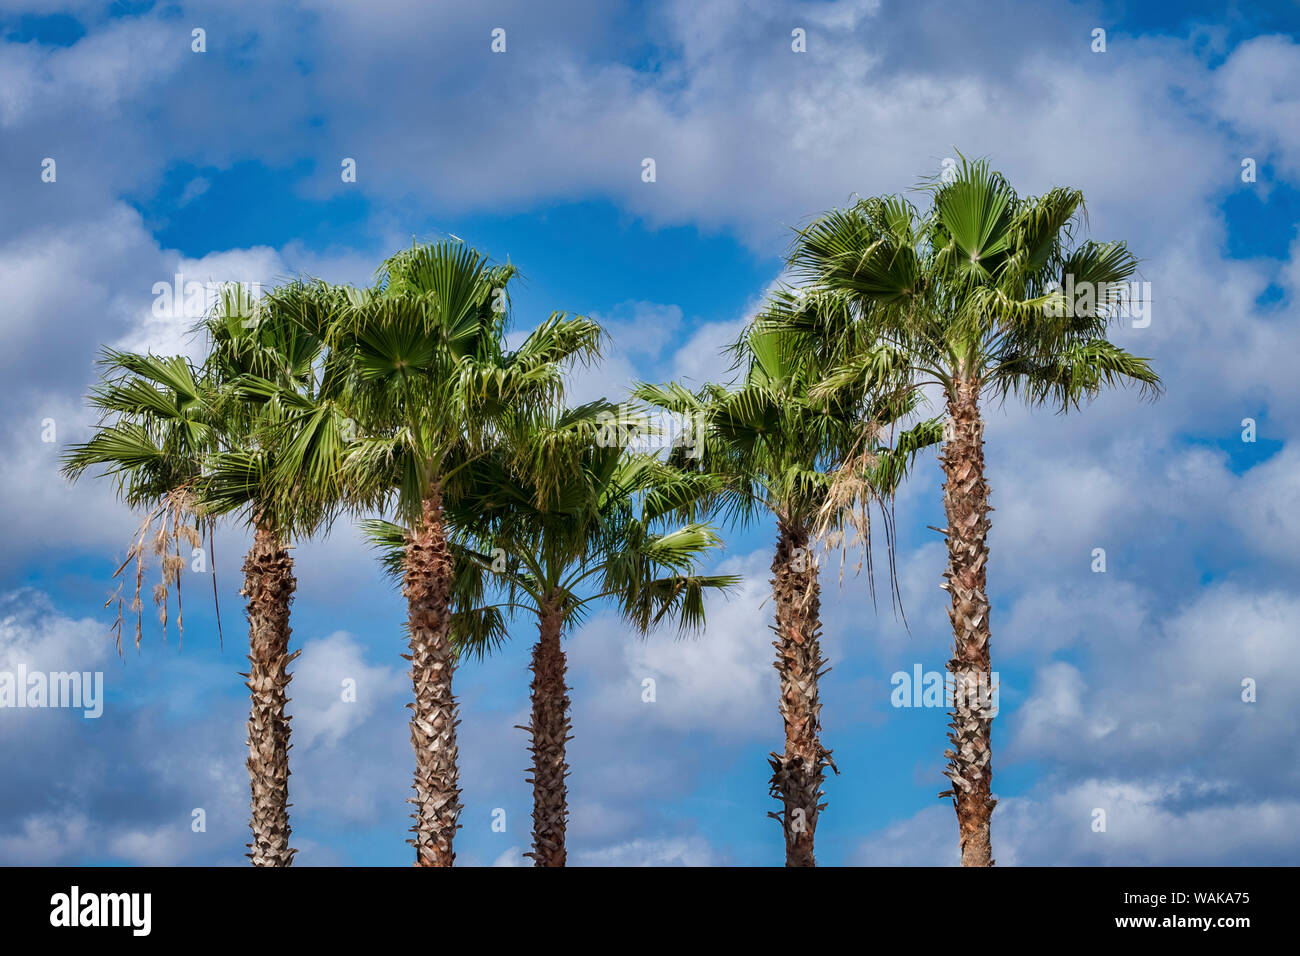 Sabal Palm trees, Florida, USA Stock Photo